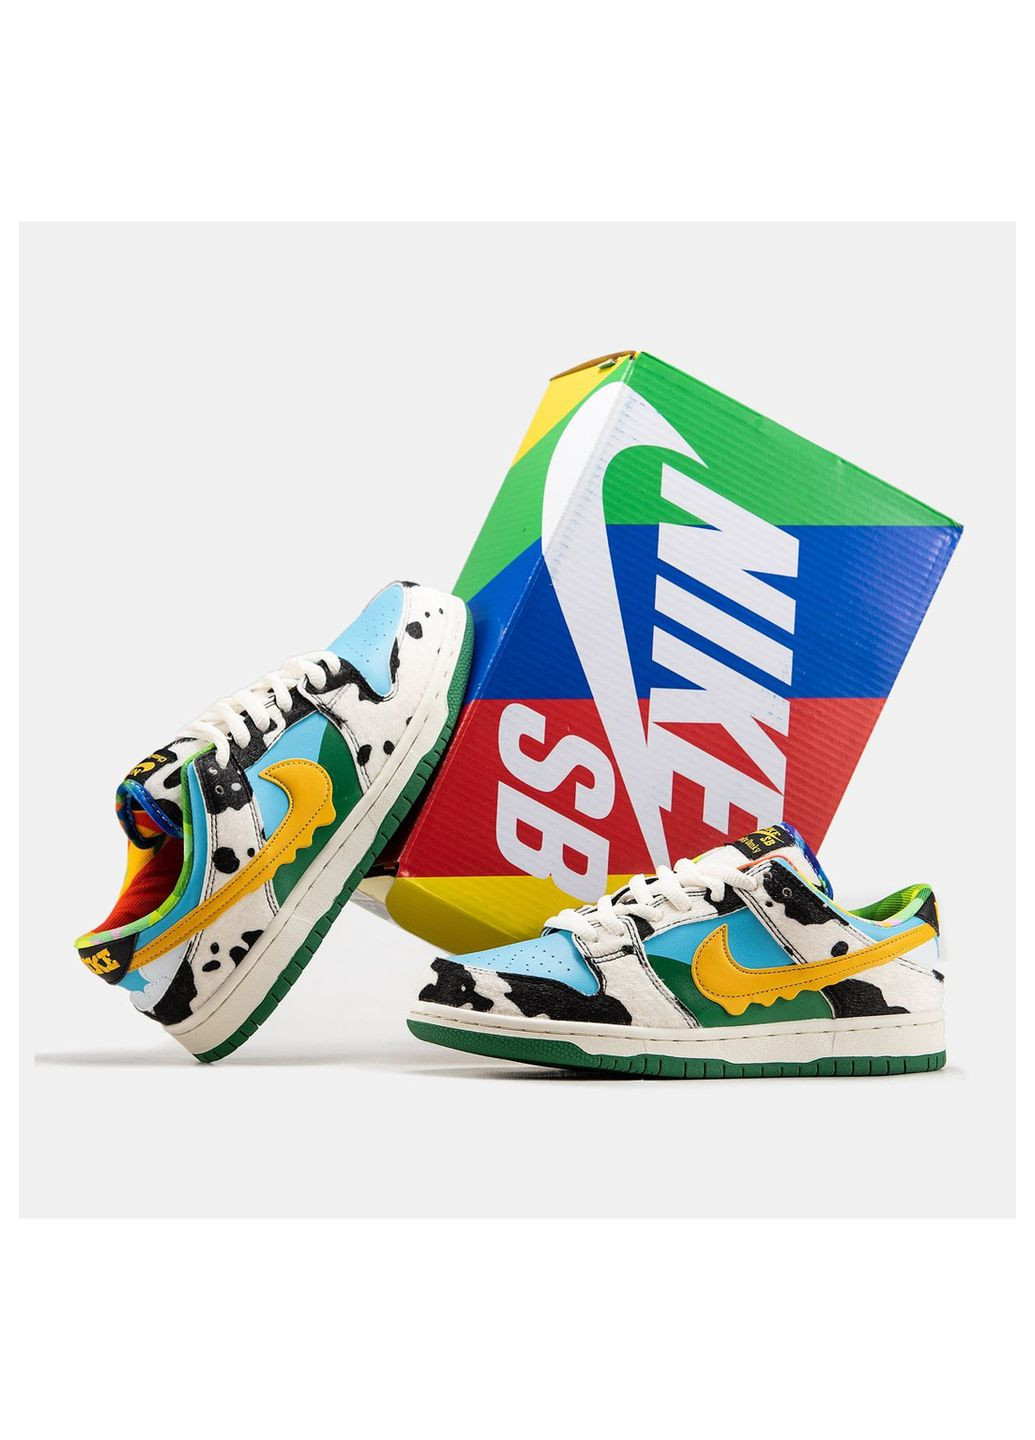 Цветные кроссовки унисекс Nike SB Dunk Low x Ben & Jerry's